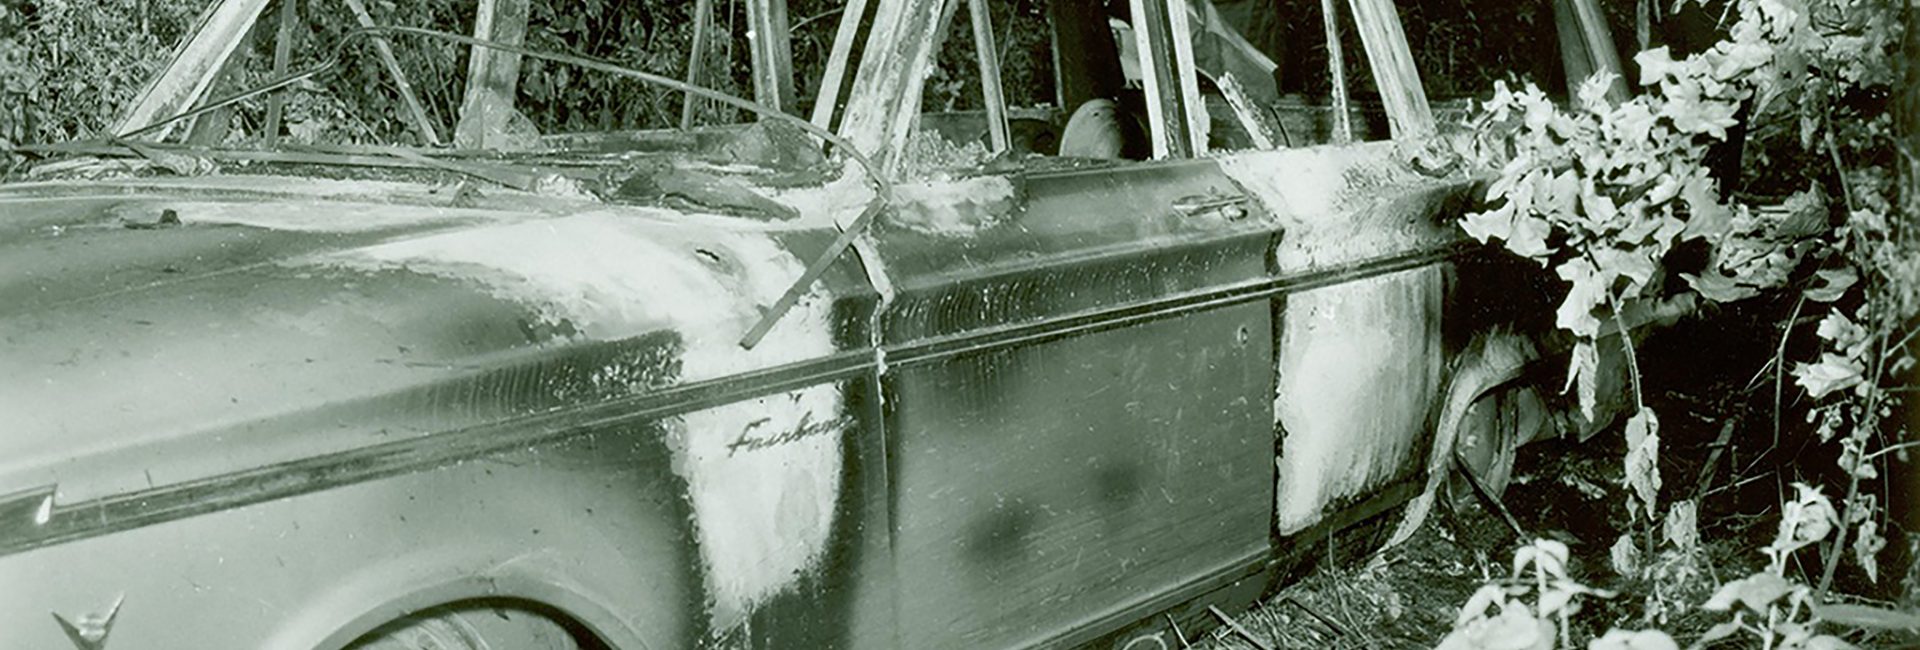 FBI Photo Burnt Ford Fairlane Mississippi Burning Murders